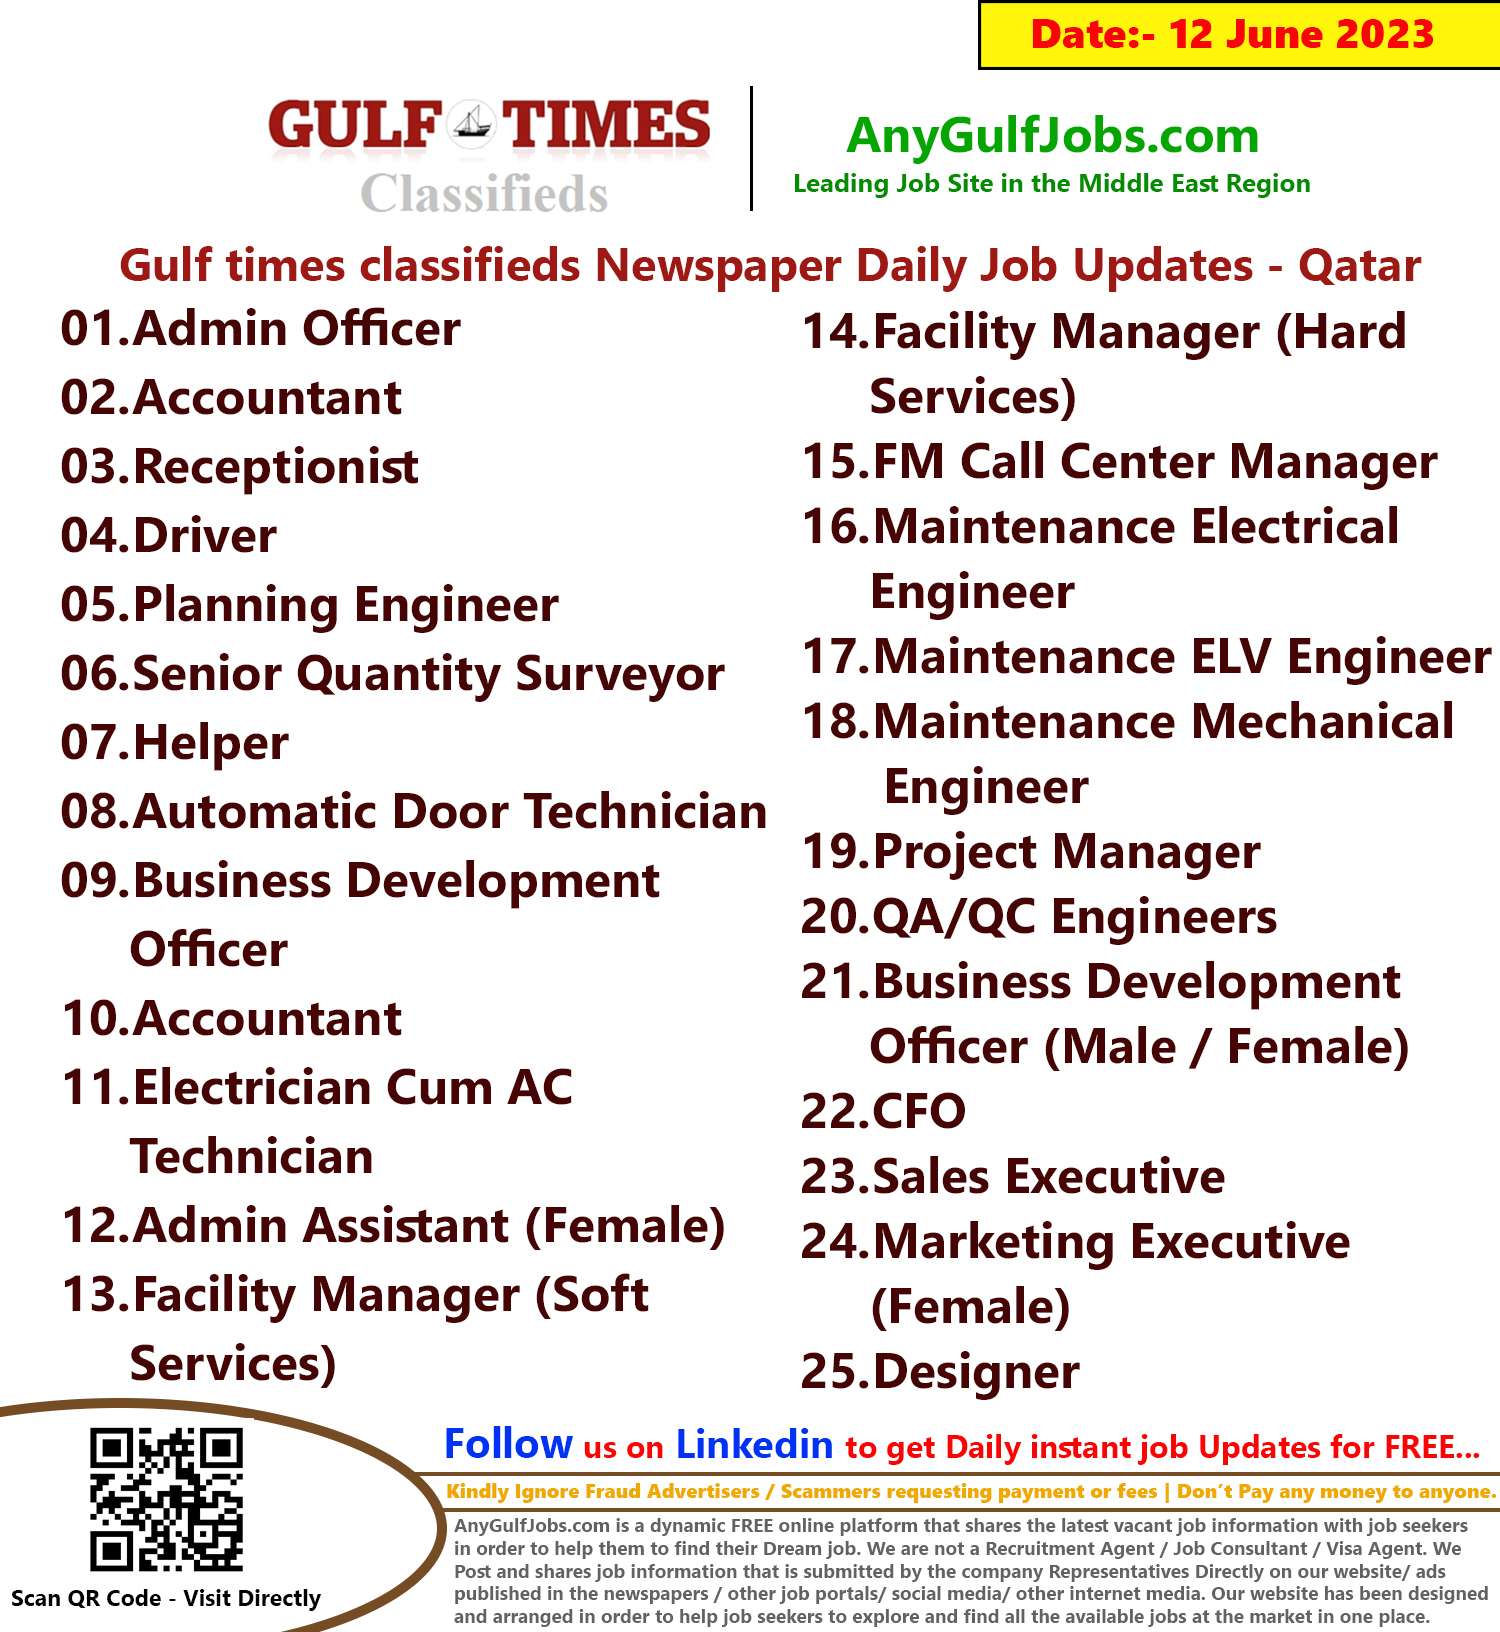 Gulf times classifieds Job Vacancies Qatar - 12 June 2023